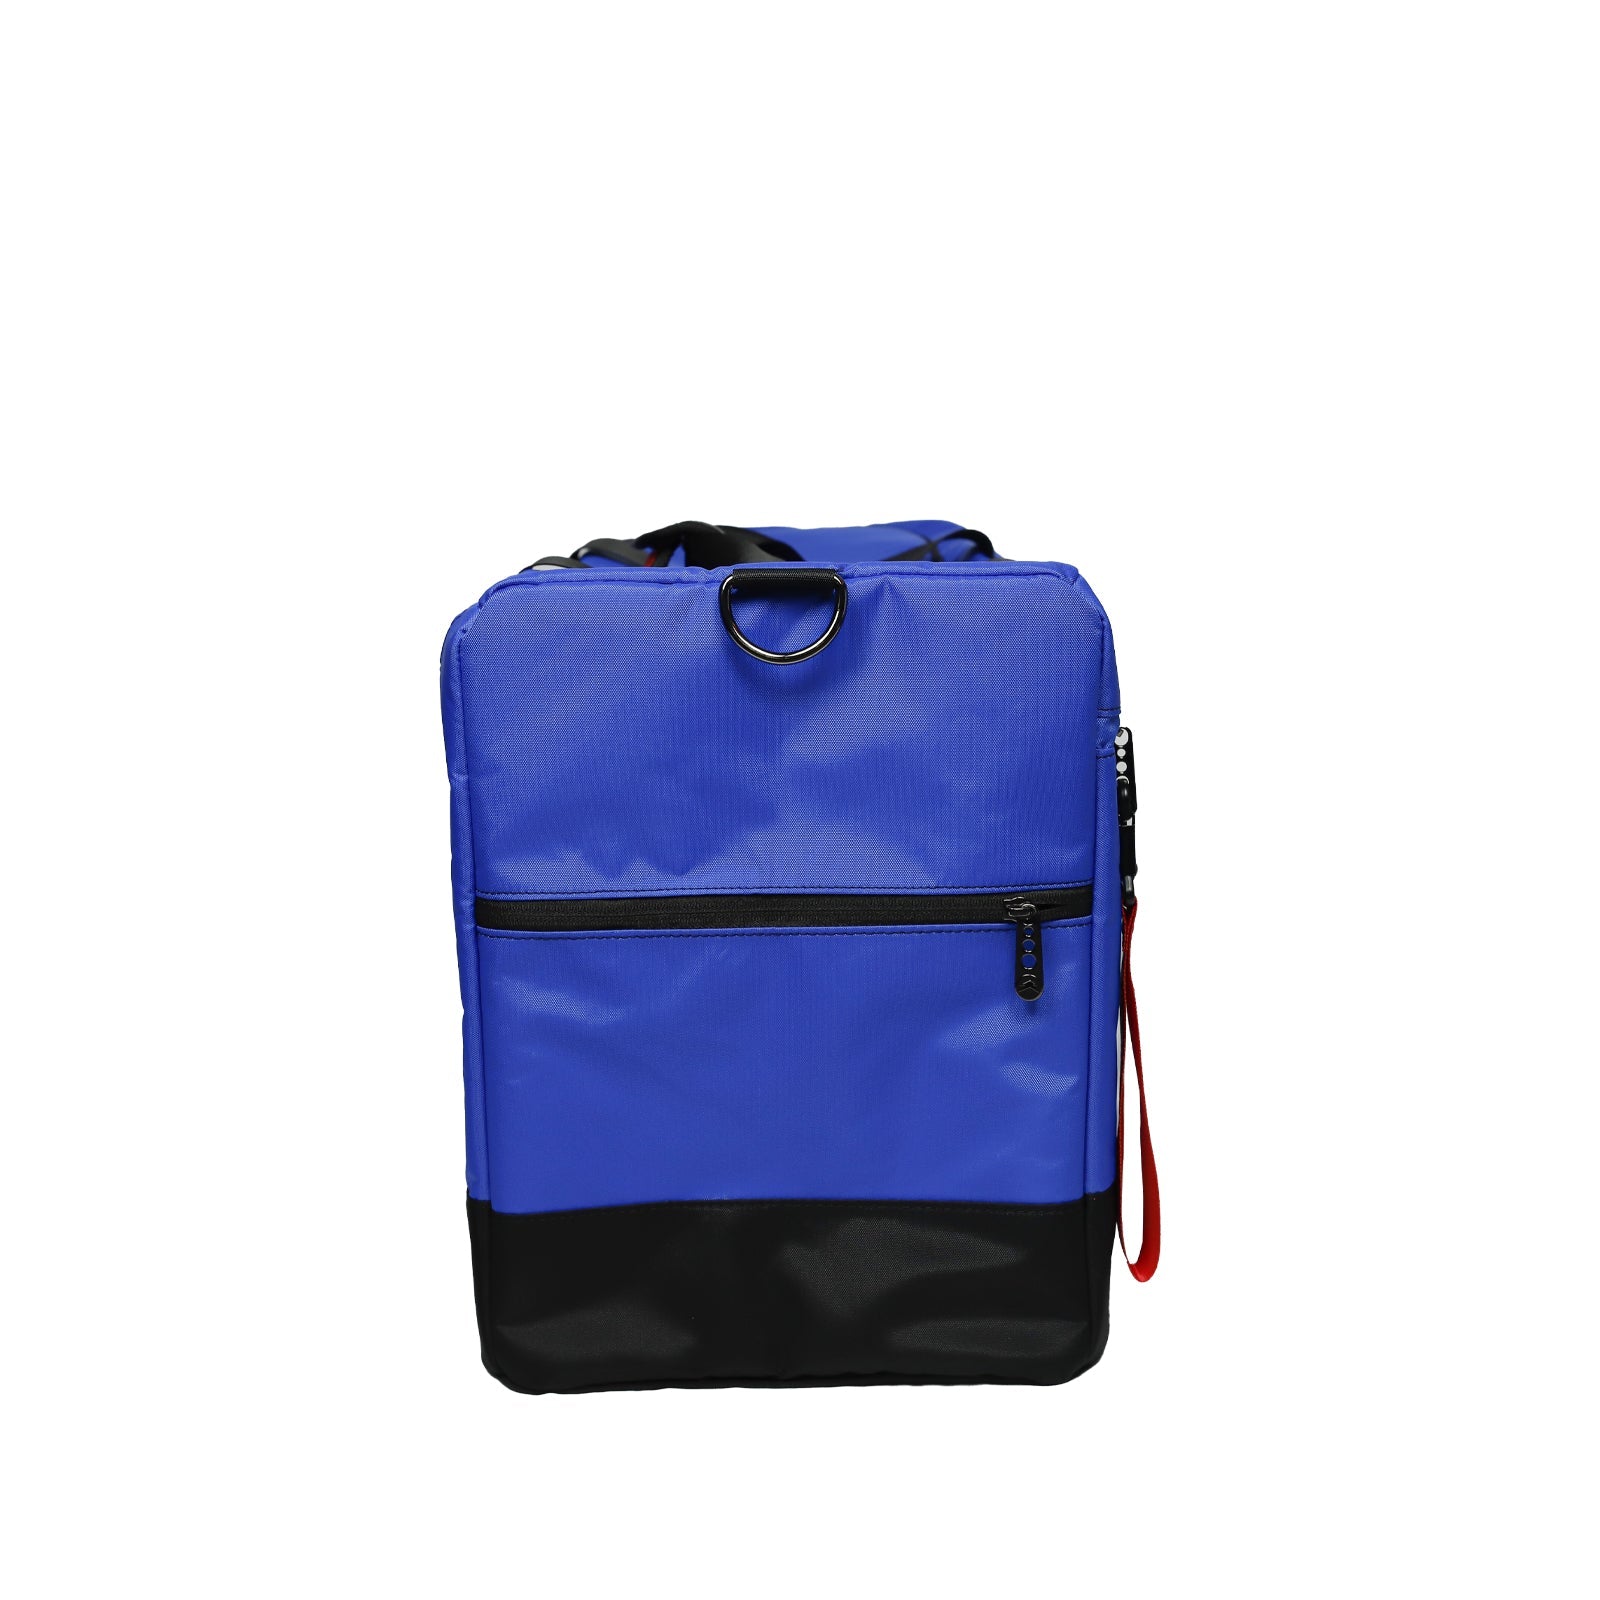 Multifunktionale Reisetasche / Sporttasche / Sneaker-Tasche - Blau